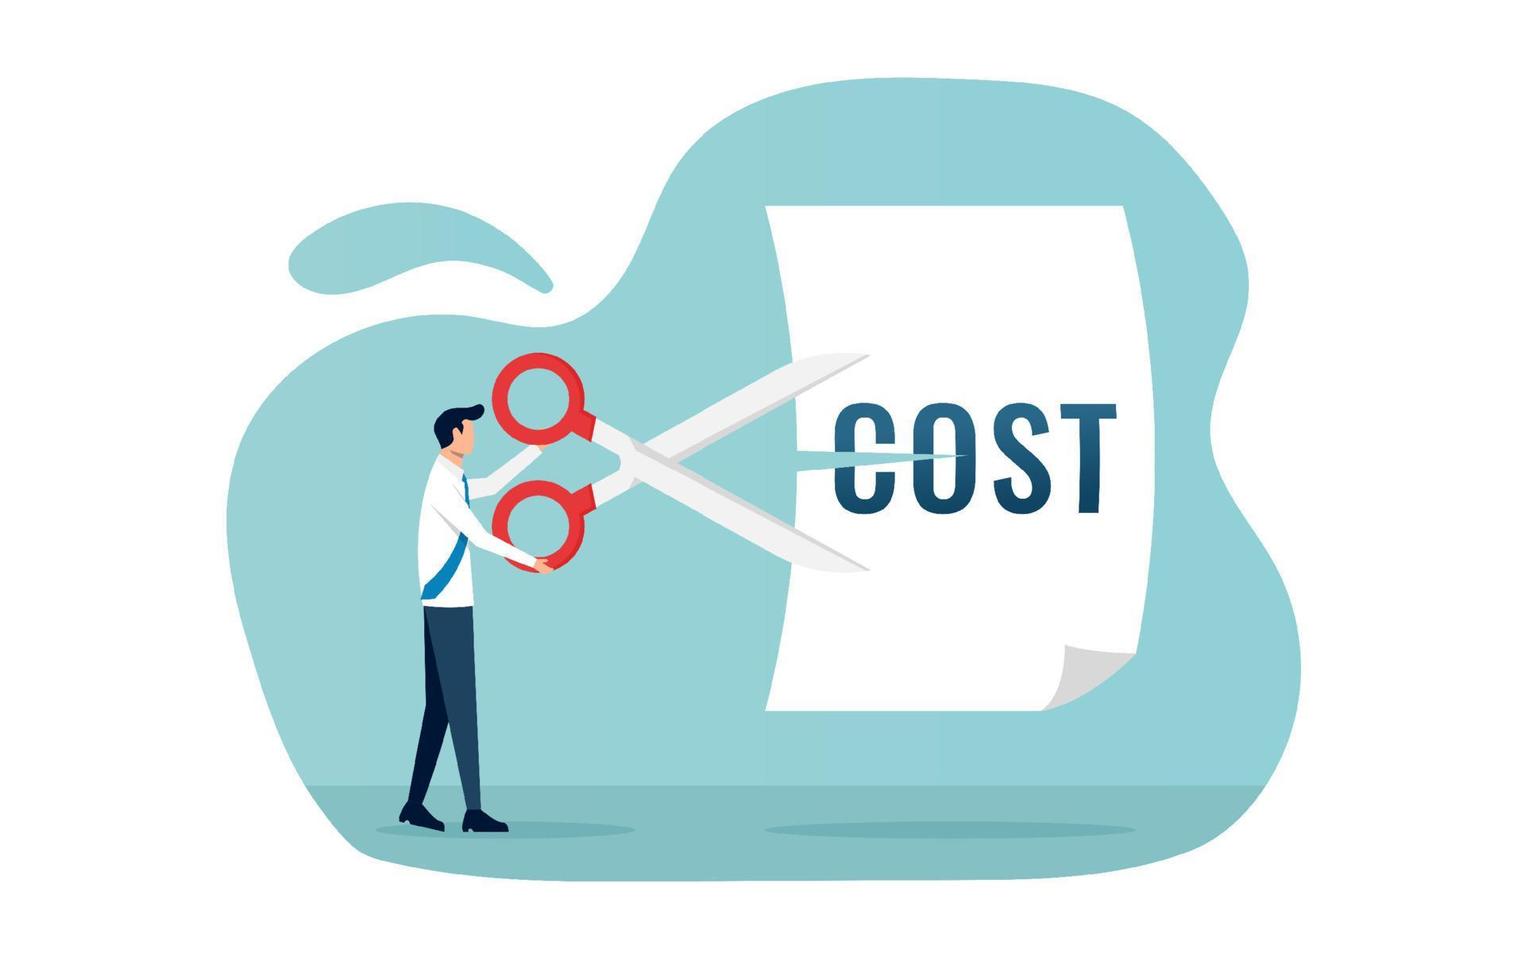 zakenman snijden kosten. kostenreductie, kostenbesparing en efficiëntie concept vectorillustratie vector